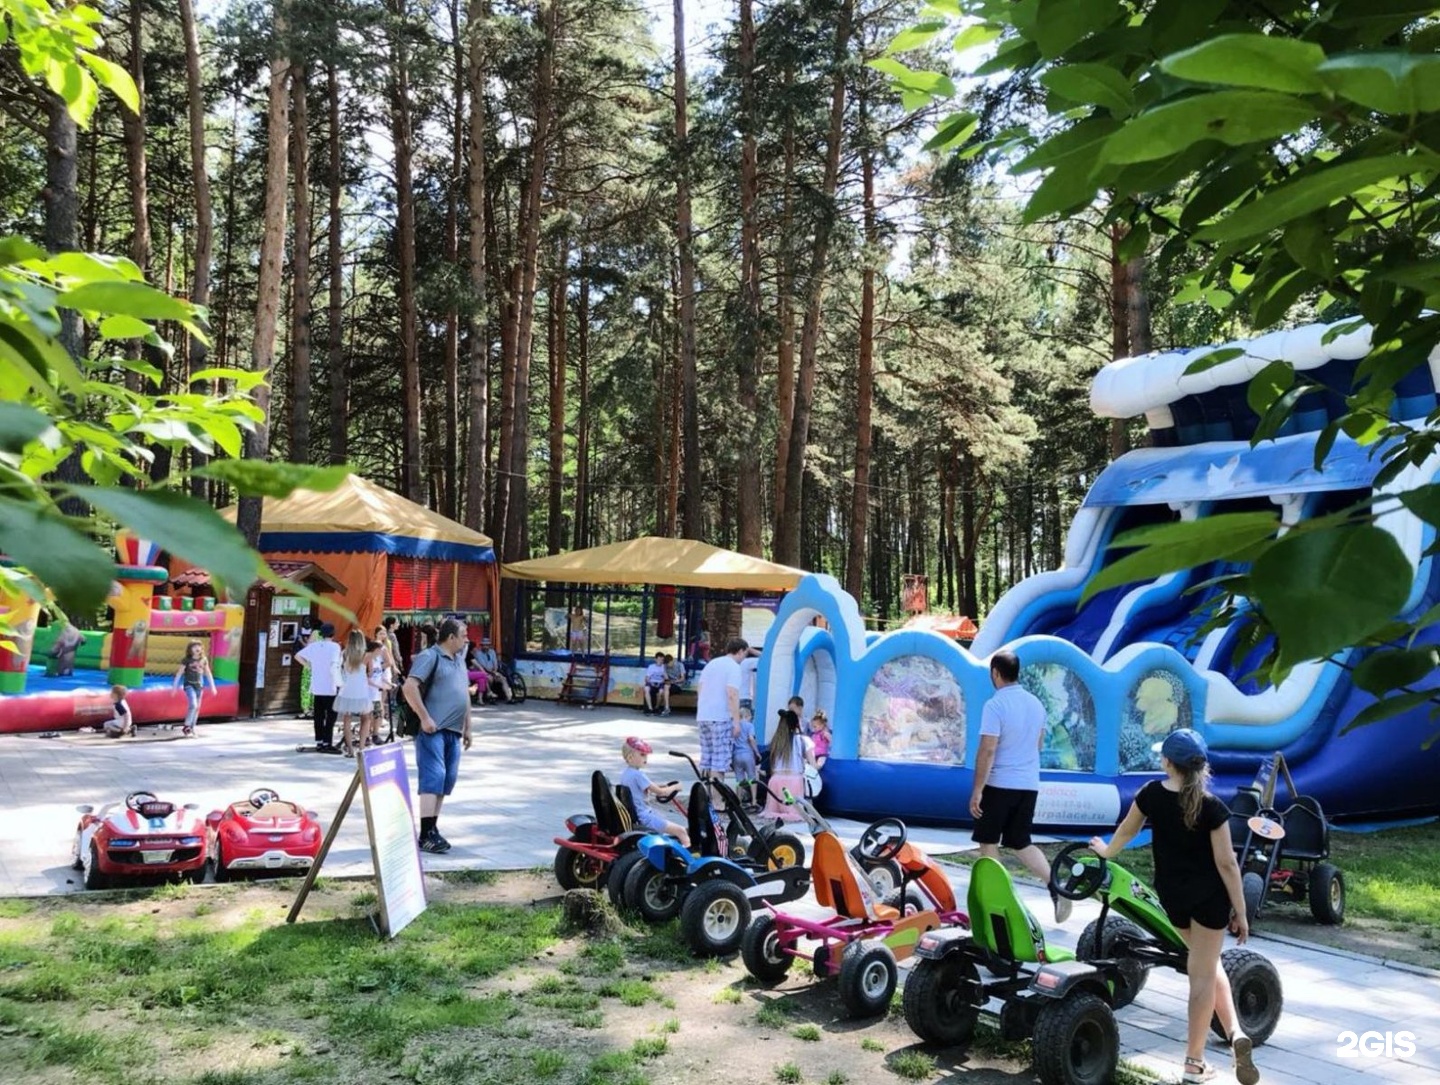 Парк заельцовский парк